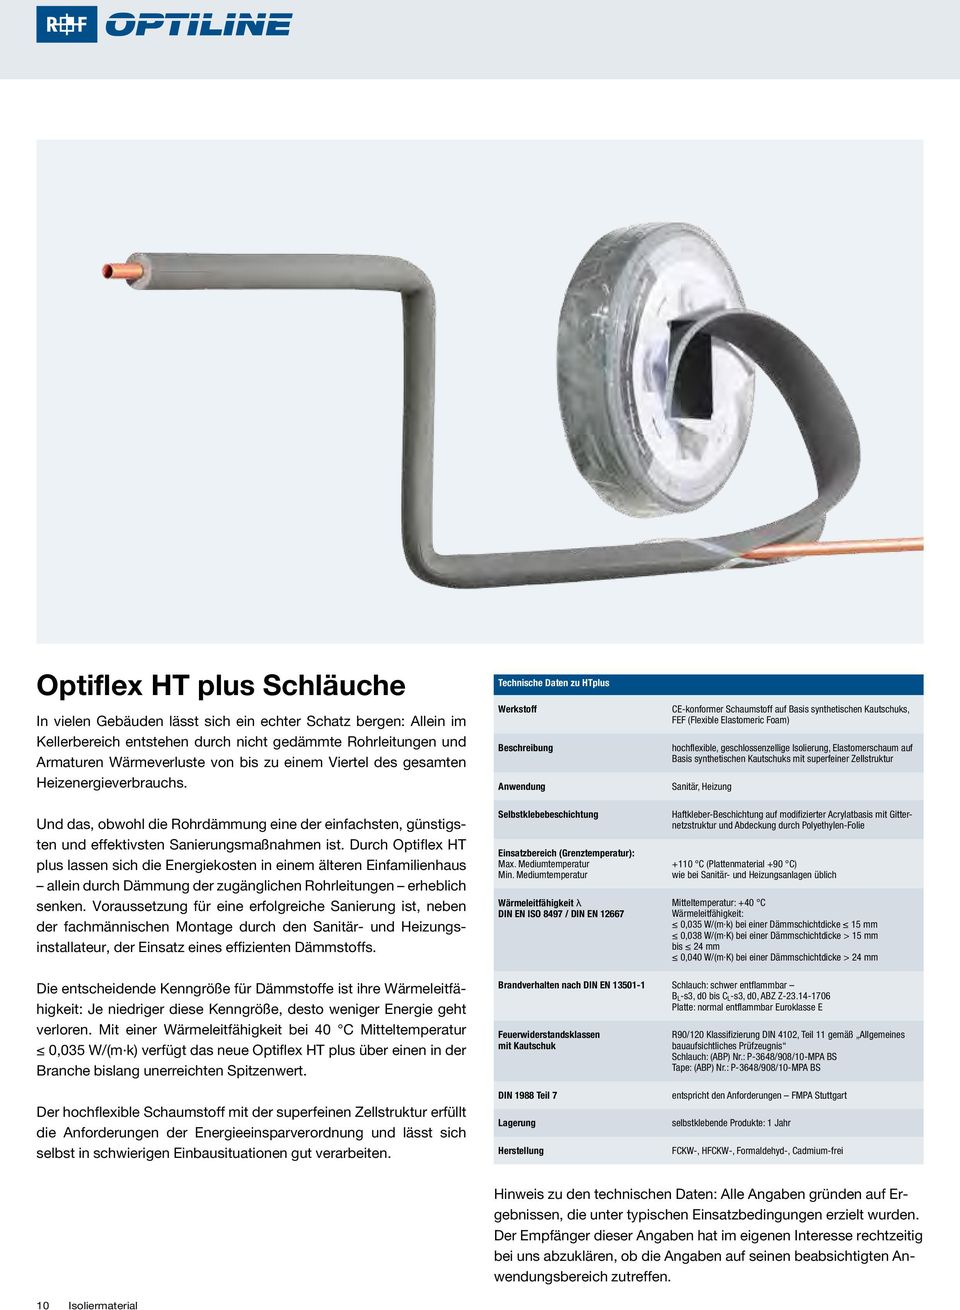 Durch Optiflex HT plus lassen sich die Energiekosten in einem älteren Einfamilien haus allein durch Dämmung der zugänglichen Rohrleitungen erheblich senken.